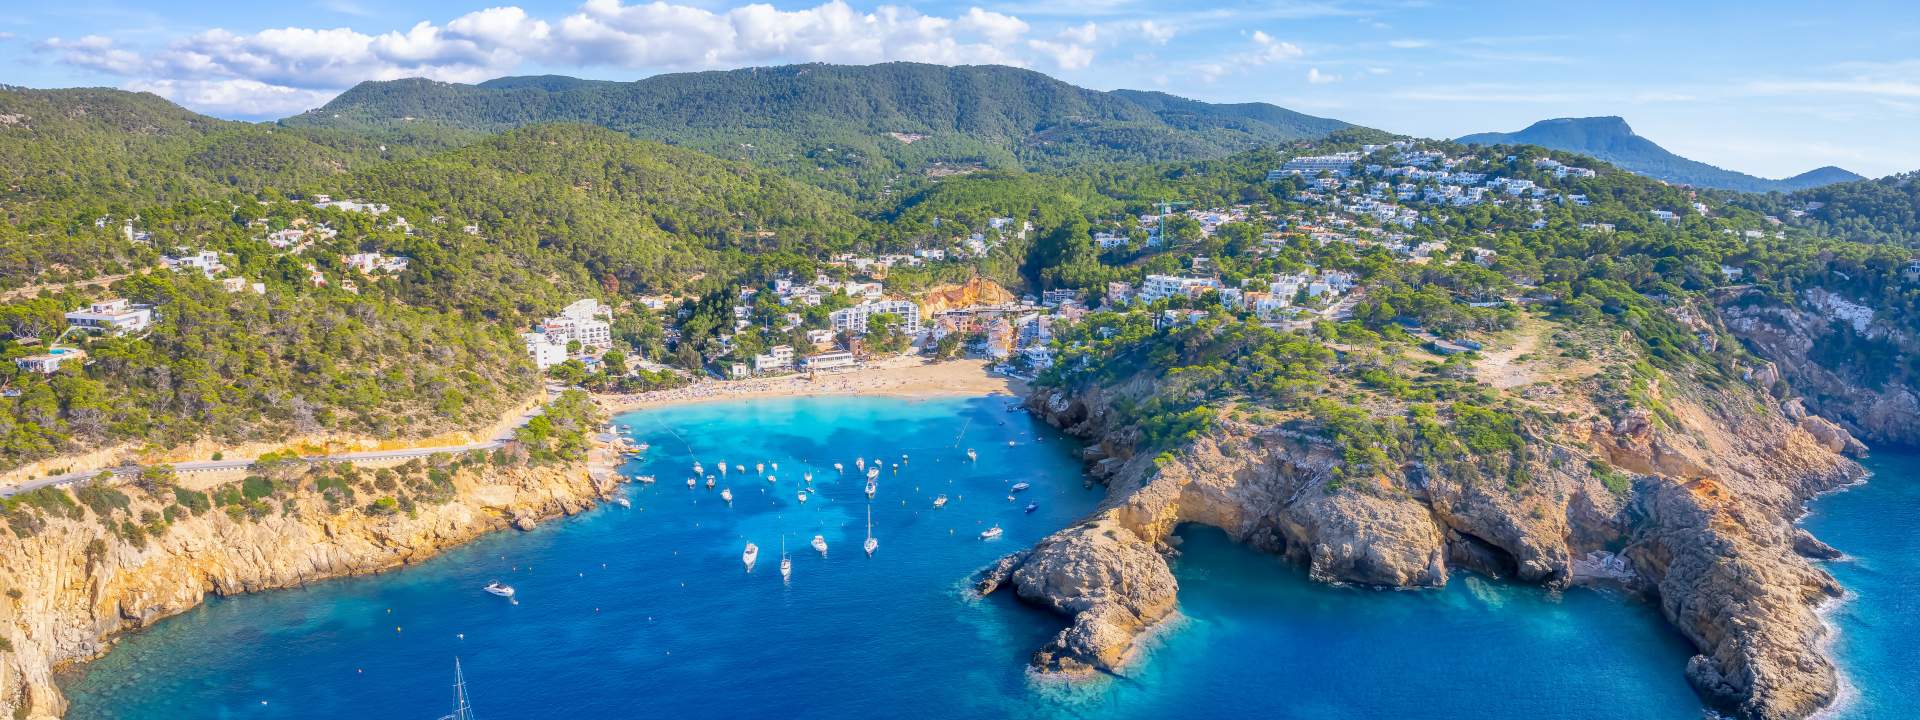 Ibiza, eine Insel mit ebenso geheimnisvollen wie schillernden Buchten